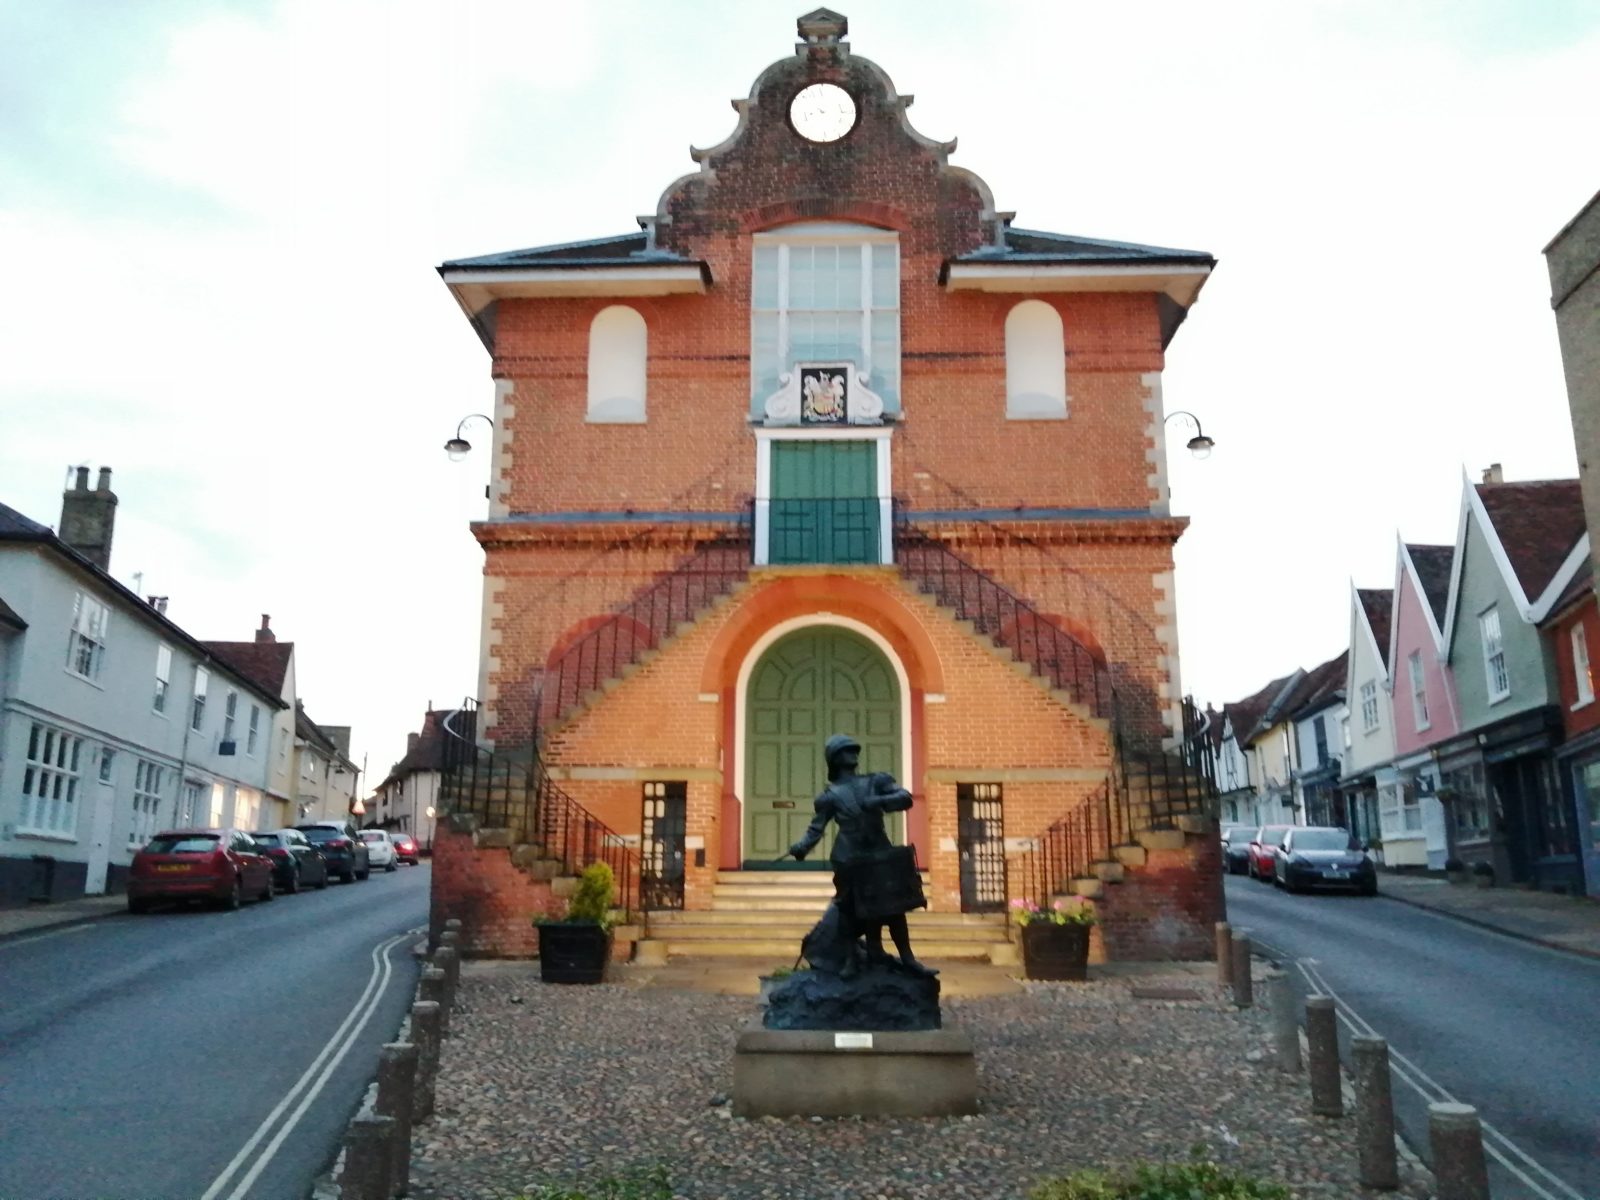 Woodbridge Town Hall